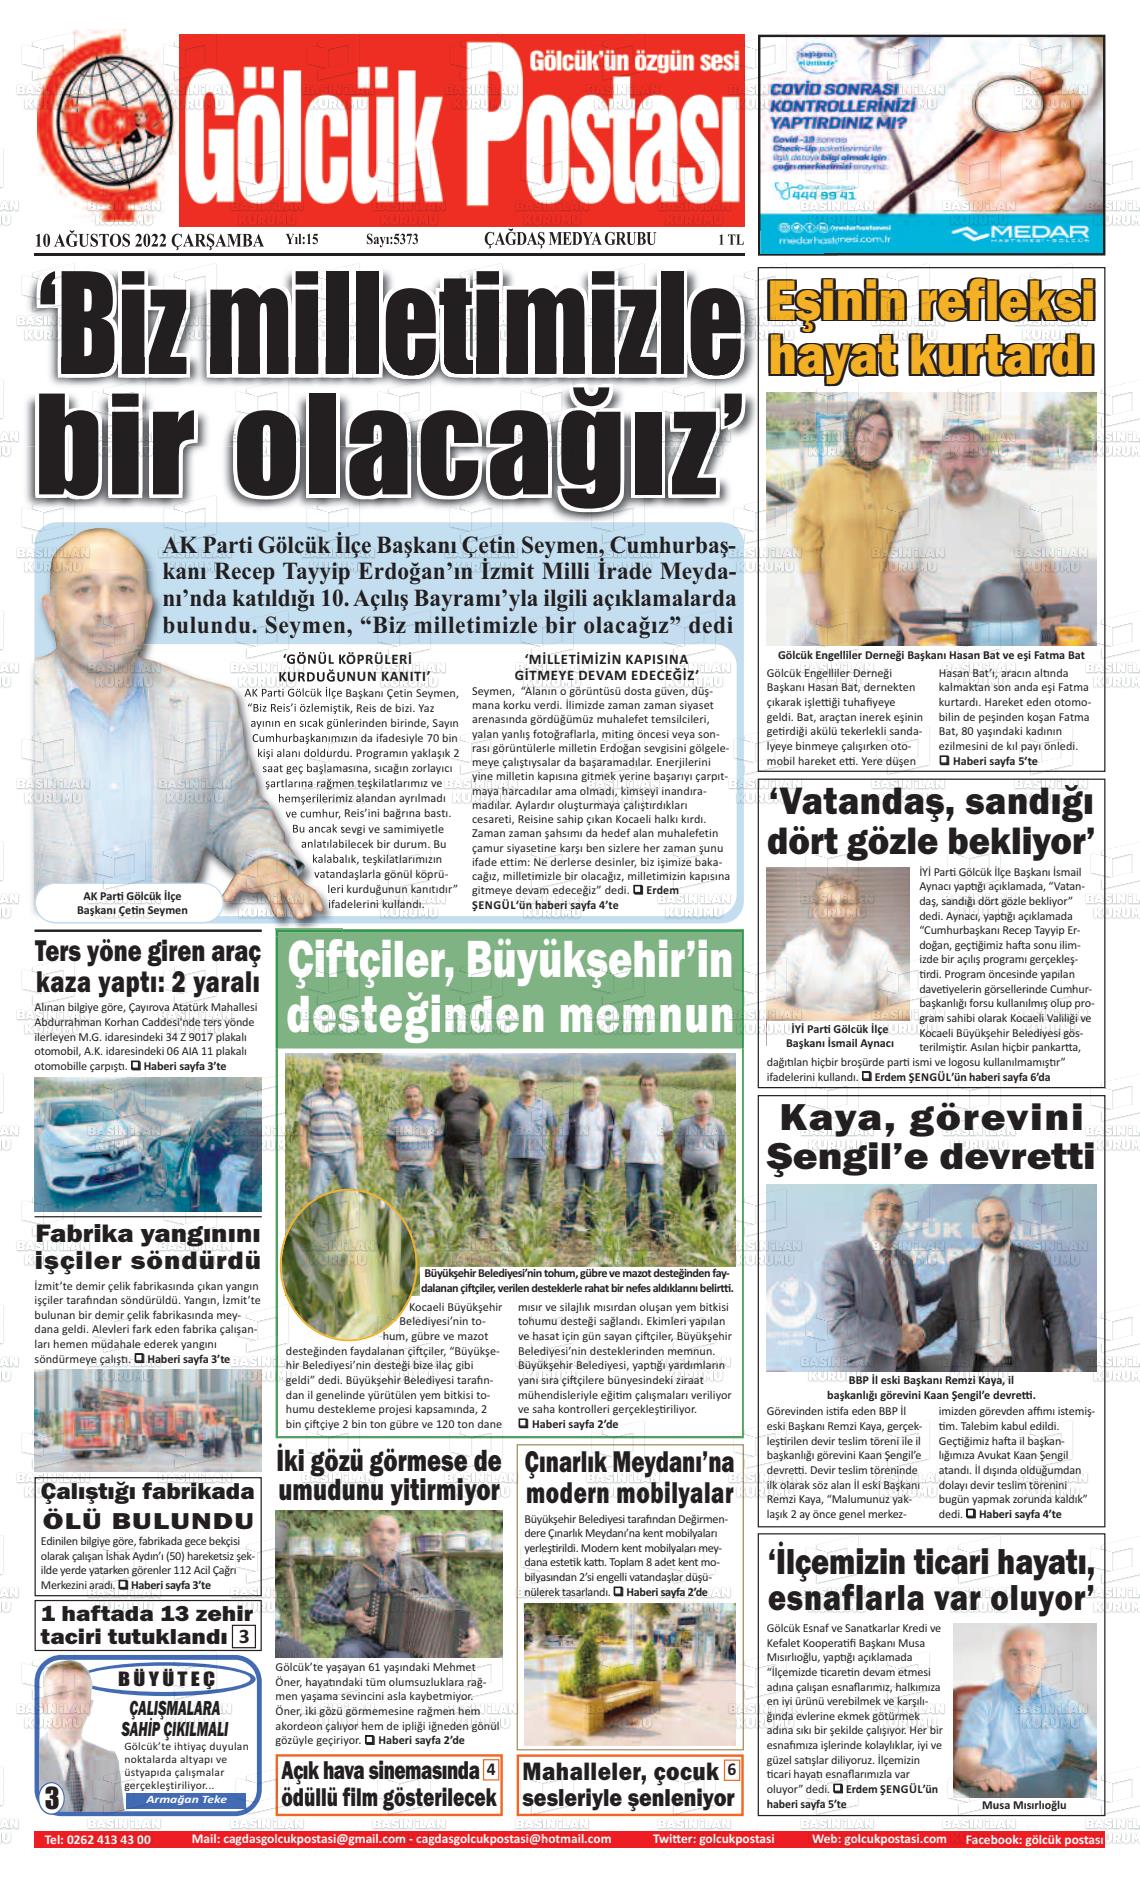 10 Ağustos 2022 Gölcük Postasi Gazete Manşeti